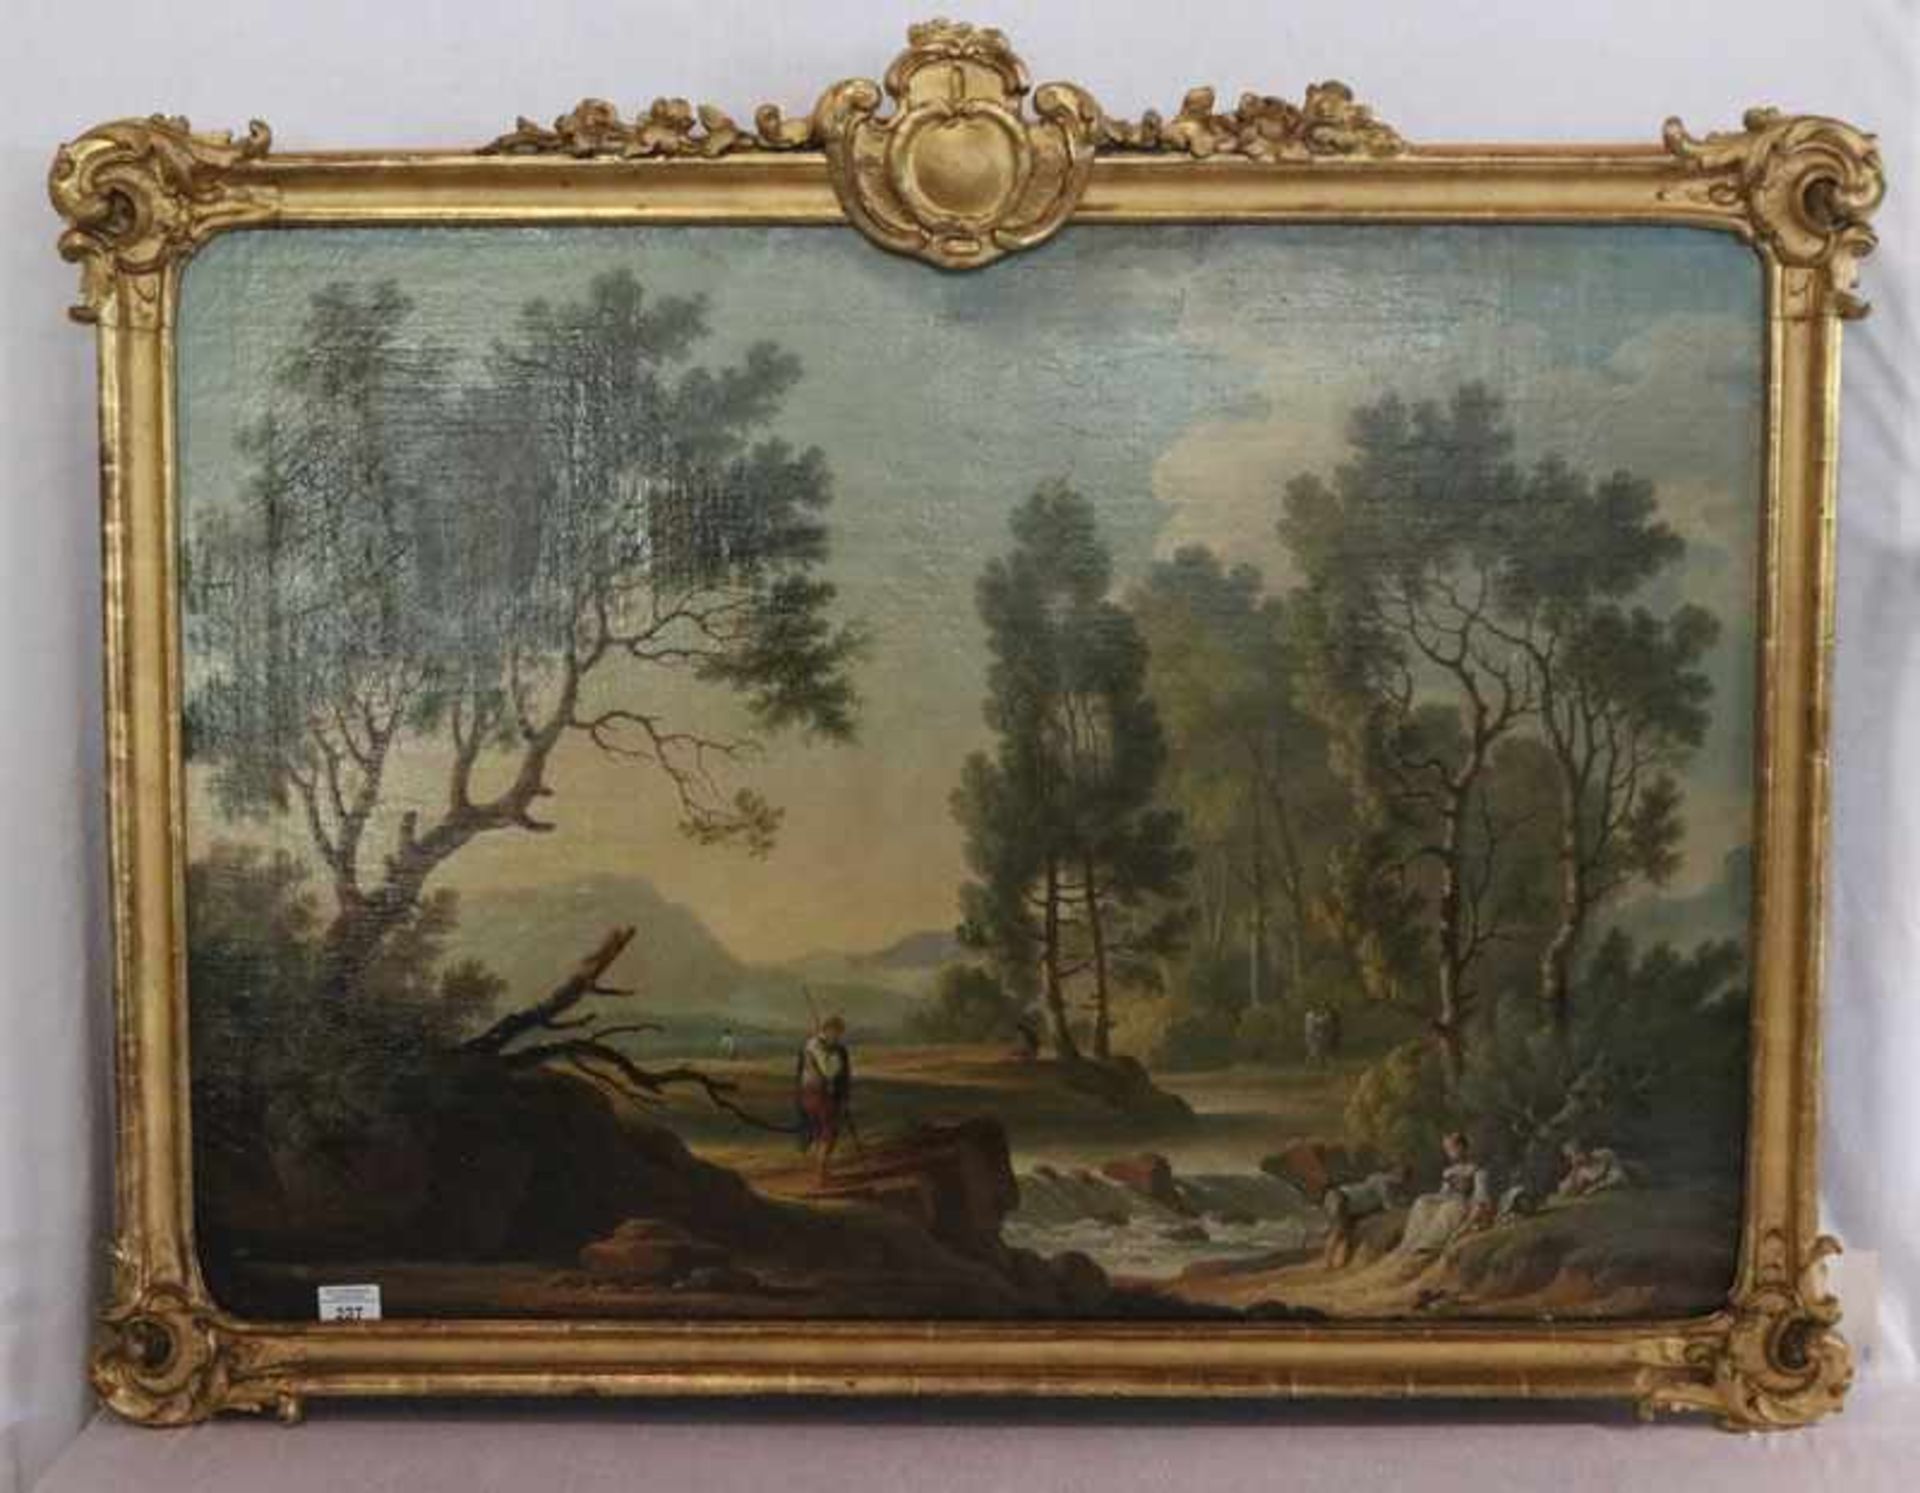 Gemälde ÖL/LW auf Holz 'Flußlandschaft mit Figurenstaffage', unbekannter Maler um 1800,